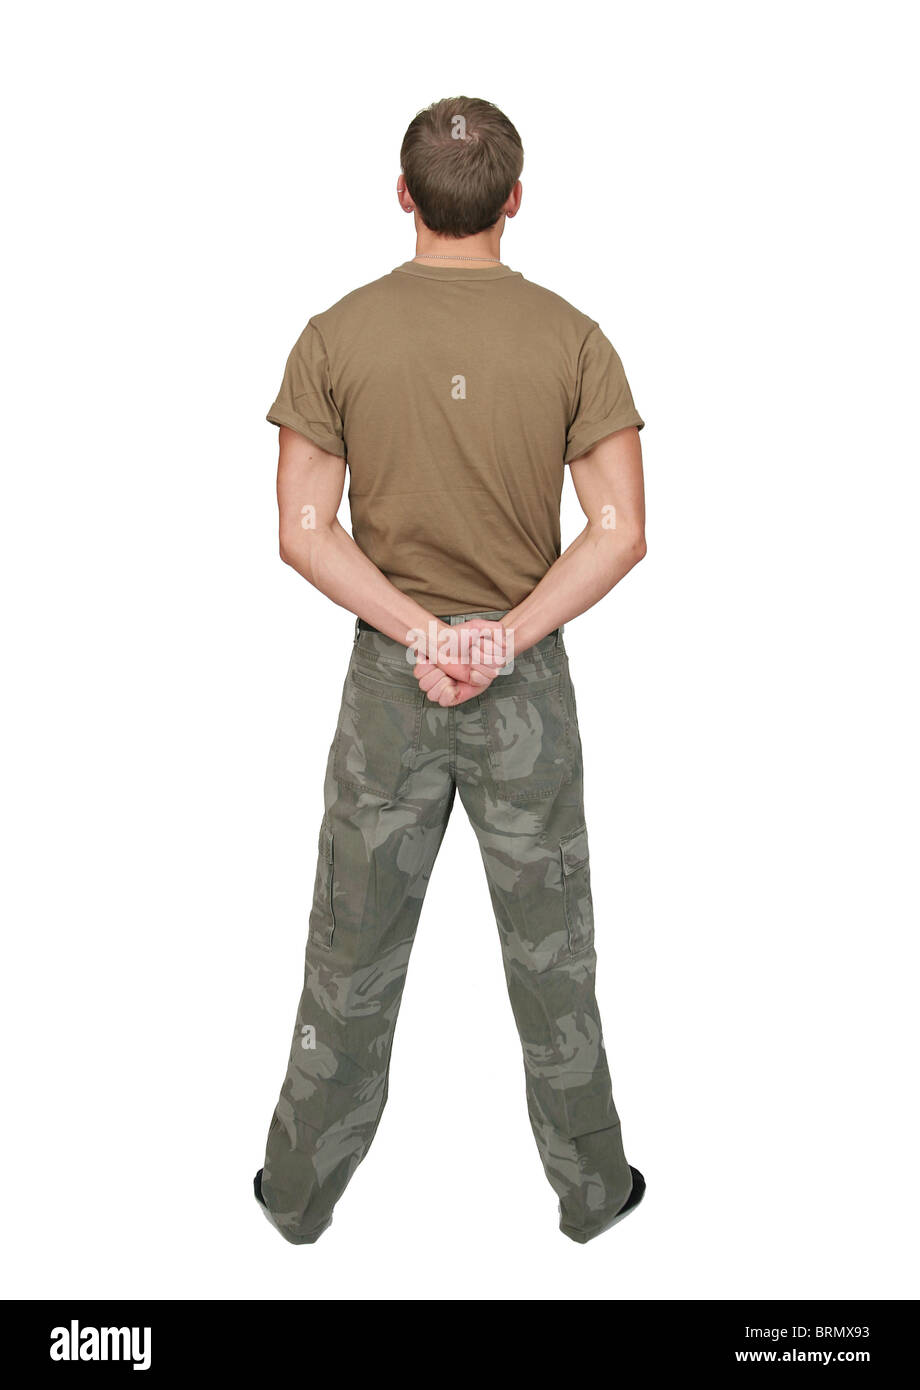 Mettre en place un soldat attrayant dans un tshirt marron avec plaques portrait demi-longueur over white Banque D'Images